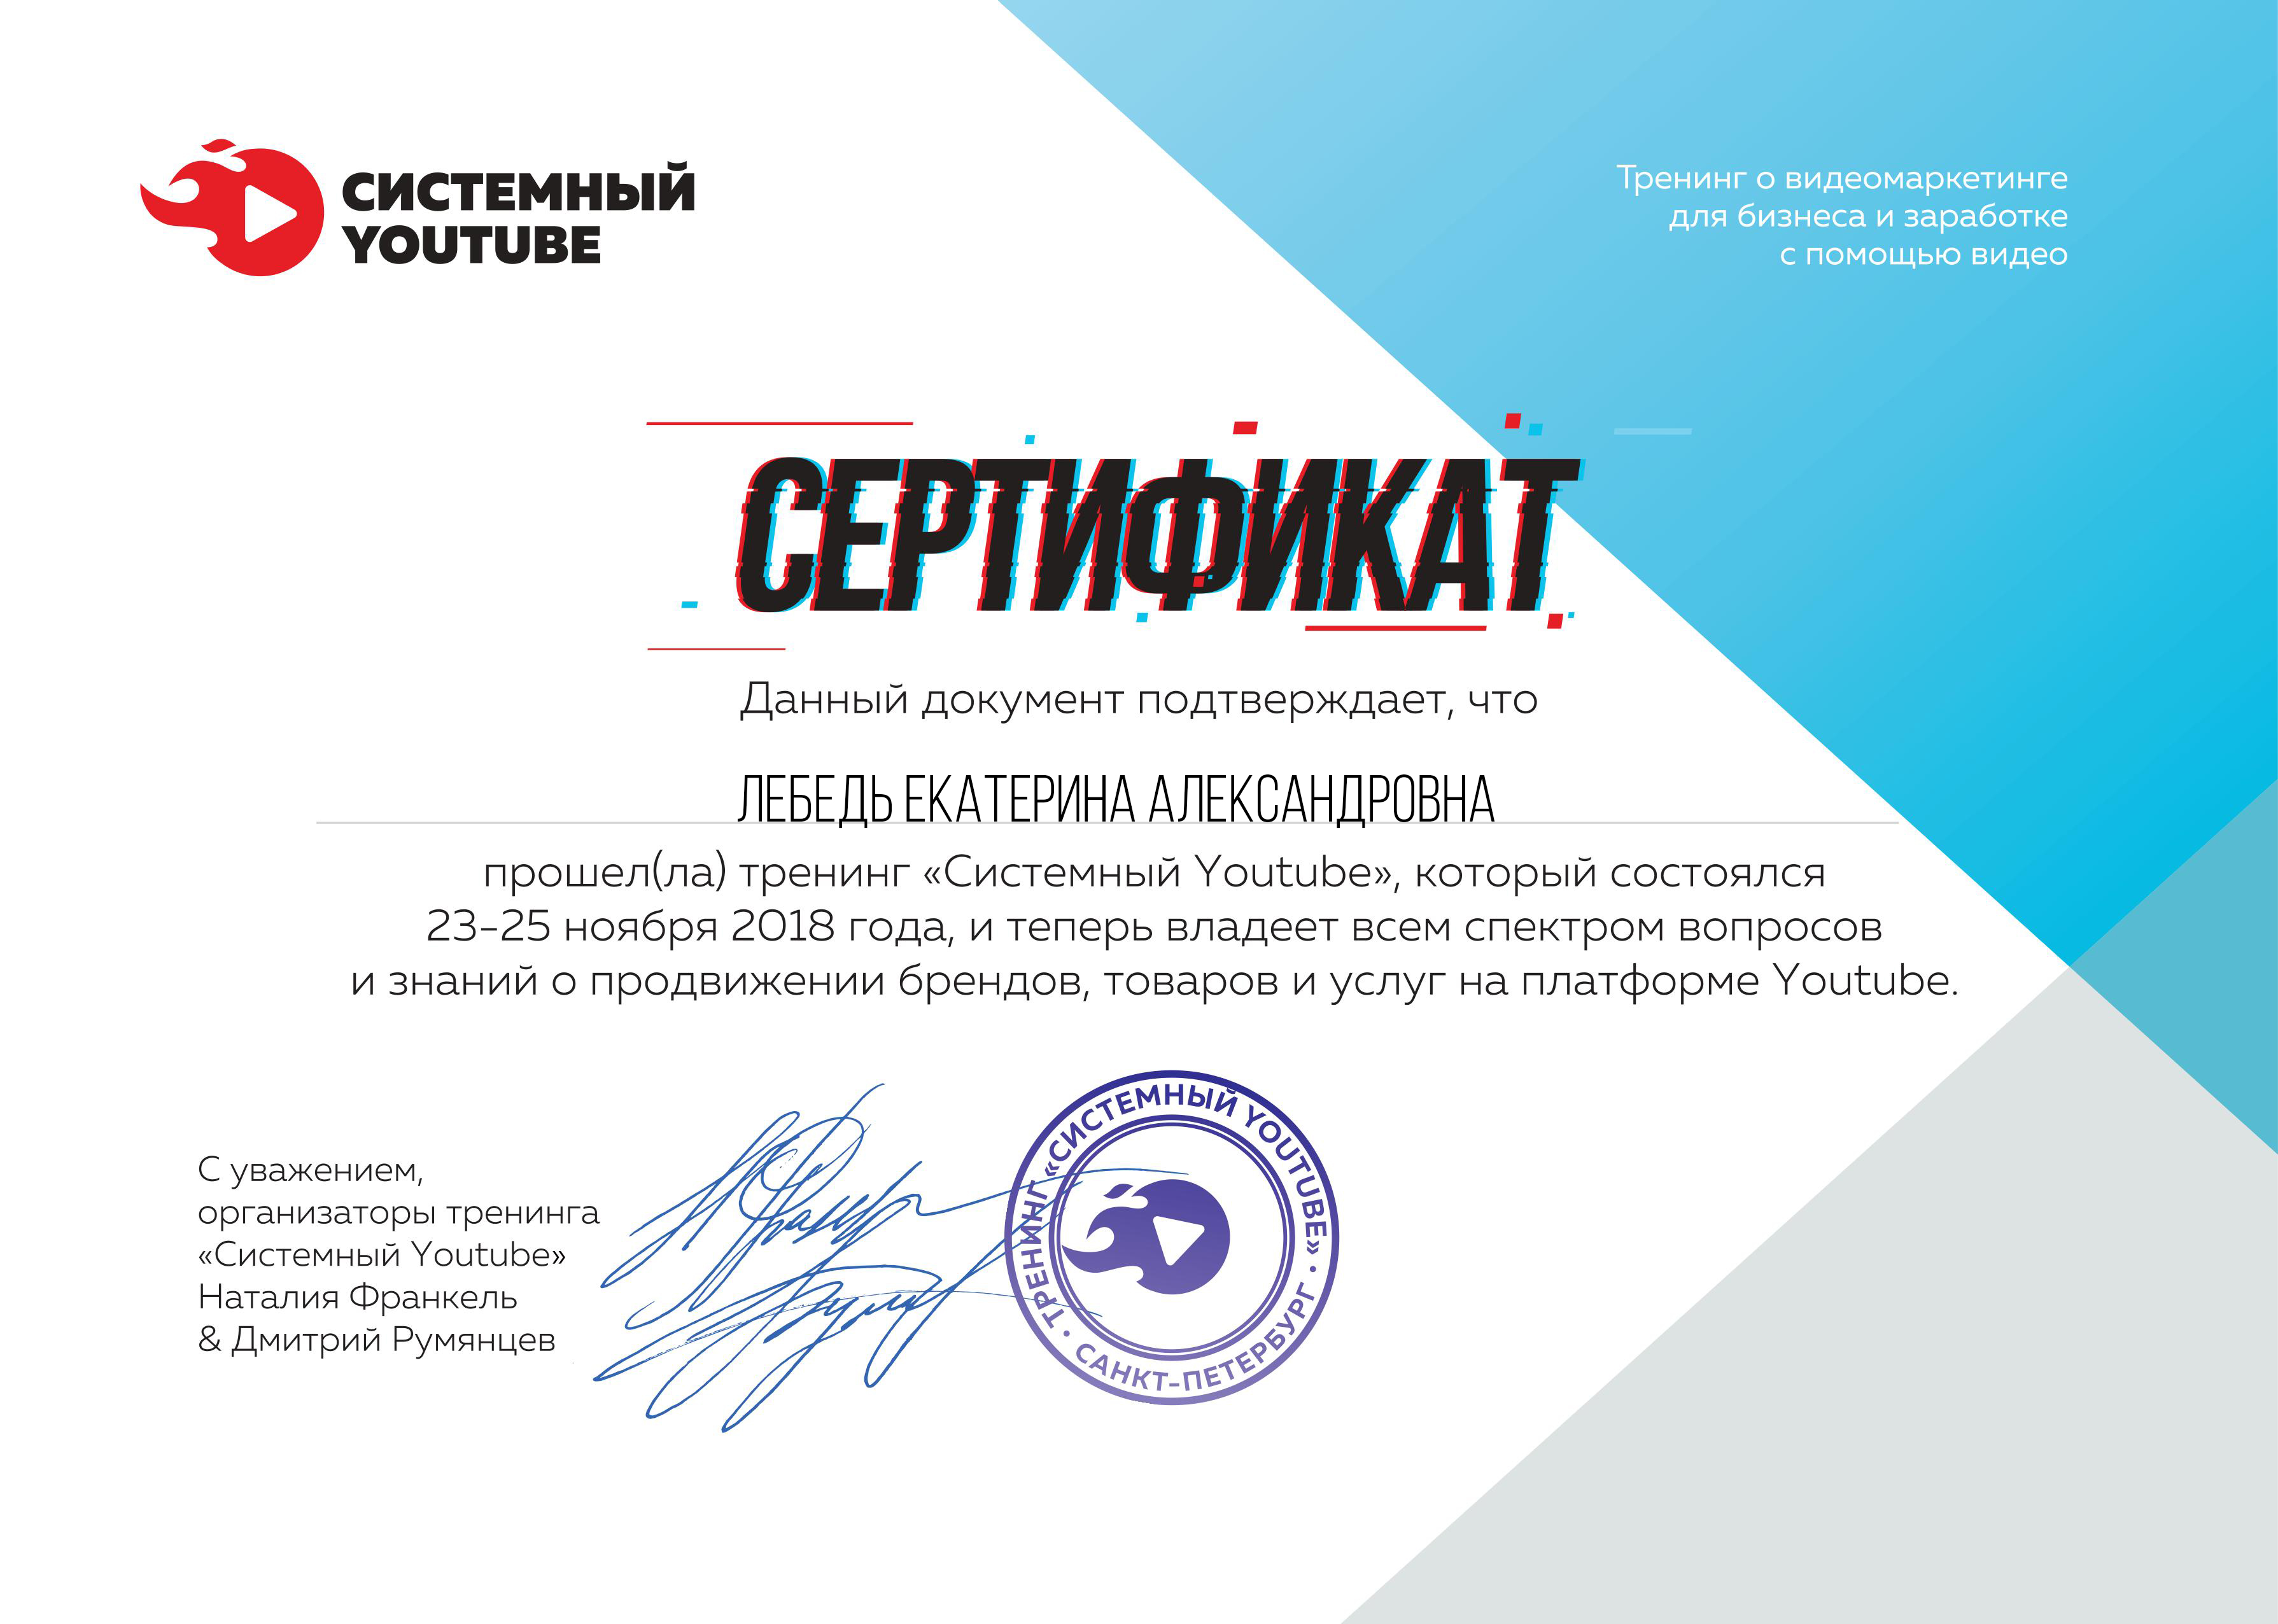 Сертификат Екатерины Лебедь